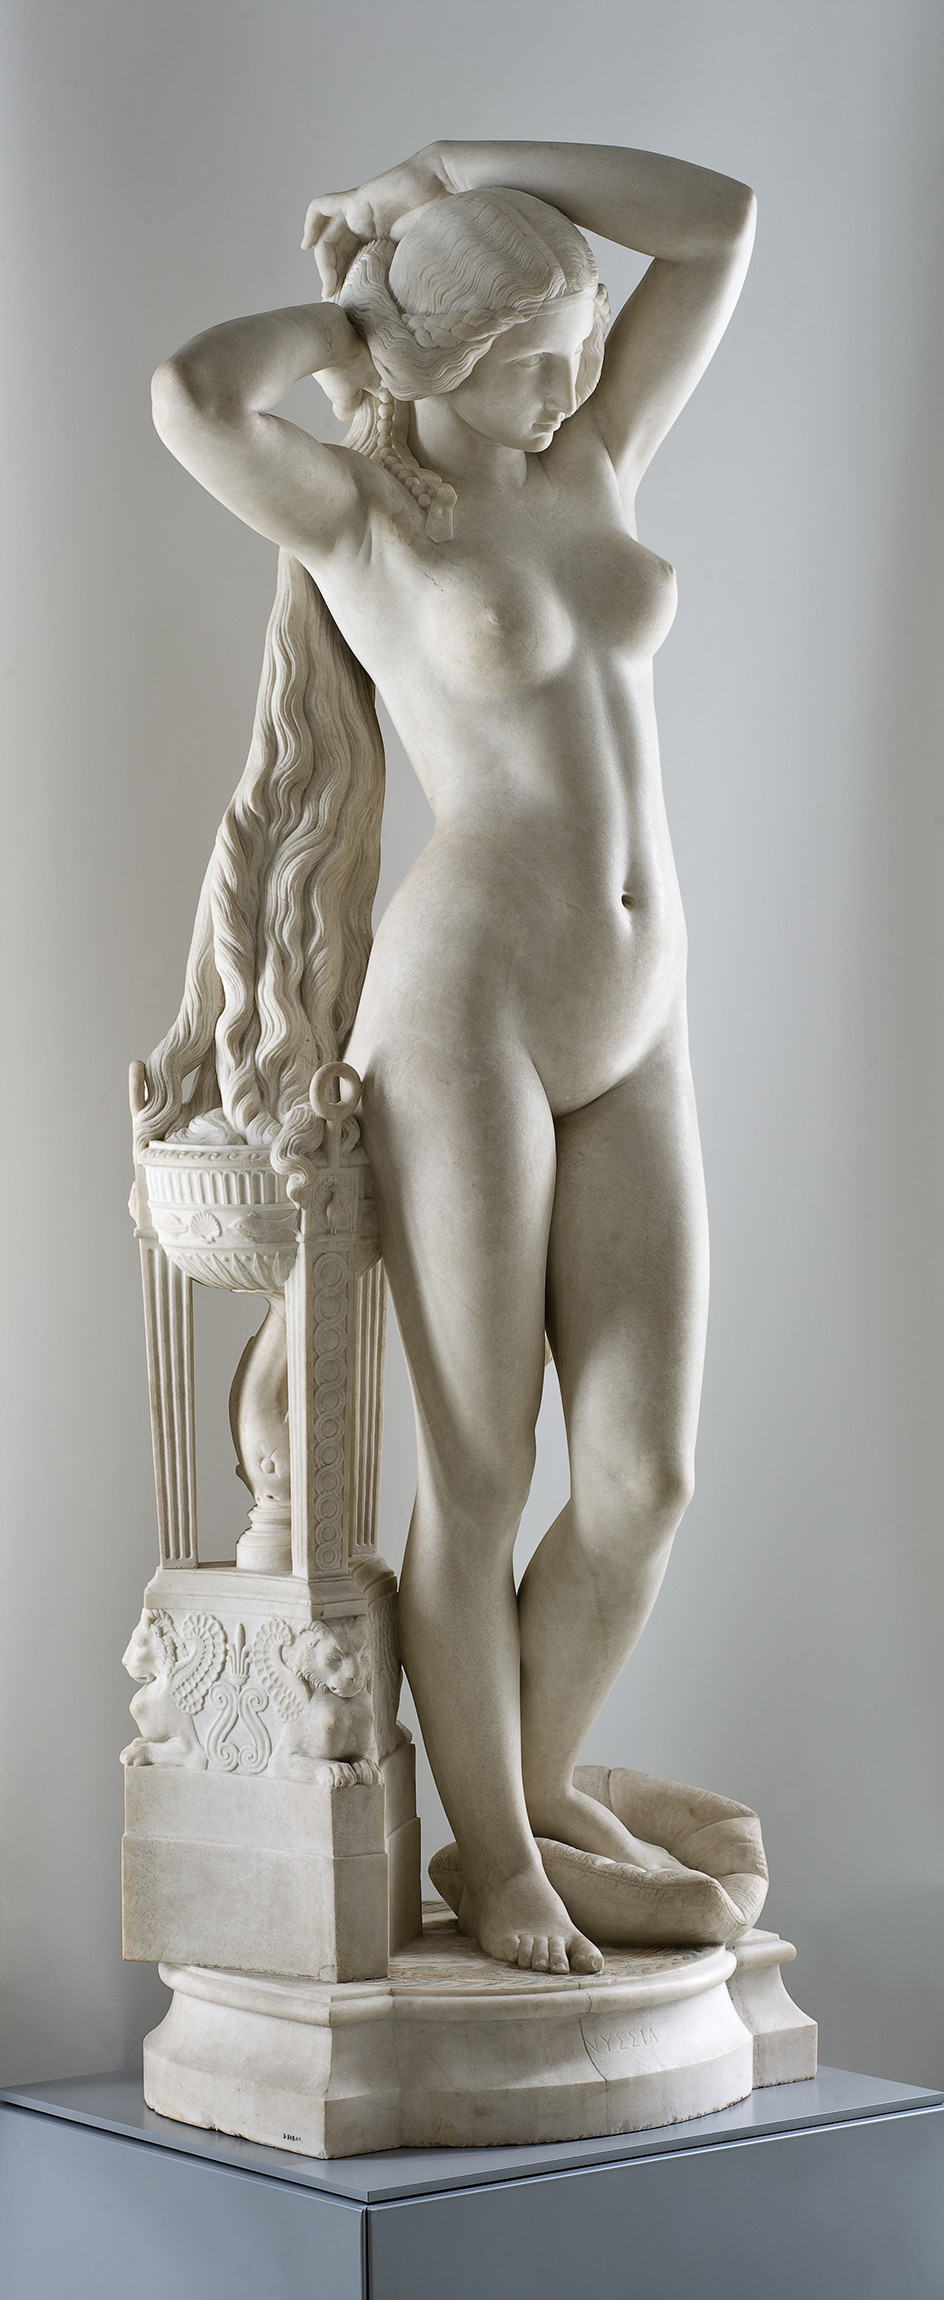 Sculpture en marbre représentant une jeune femme nue et debout (Nyssia, l'épouse du roi Candaule) et se tenant l'arrière des cheveux de ses deux mains, et le pied gauche appuyé sur un coussin.